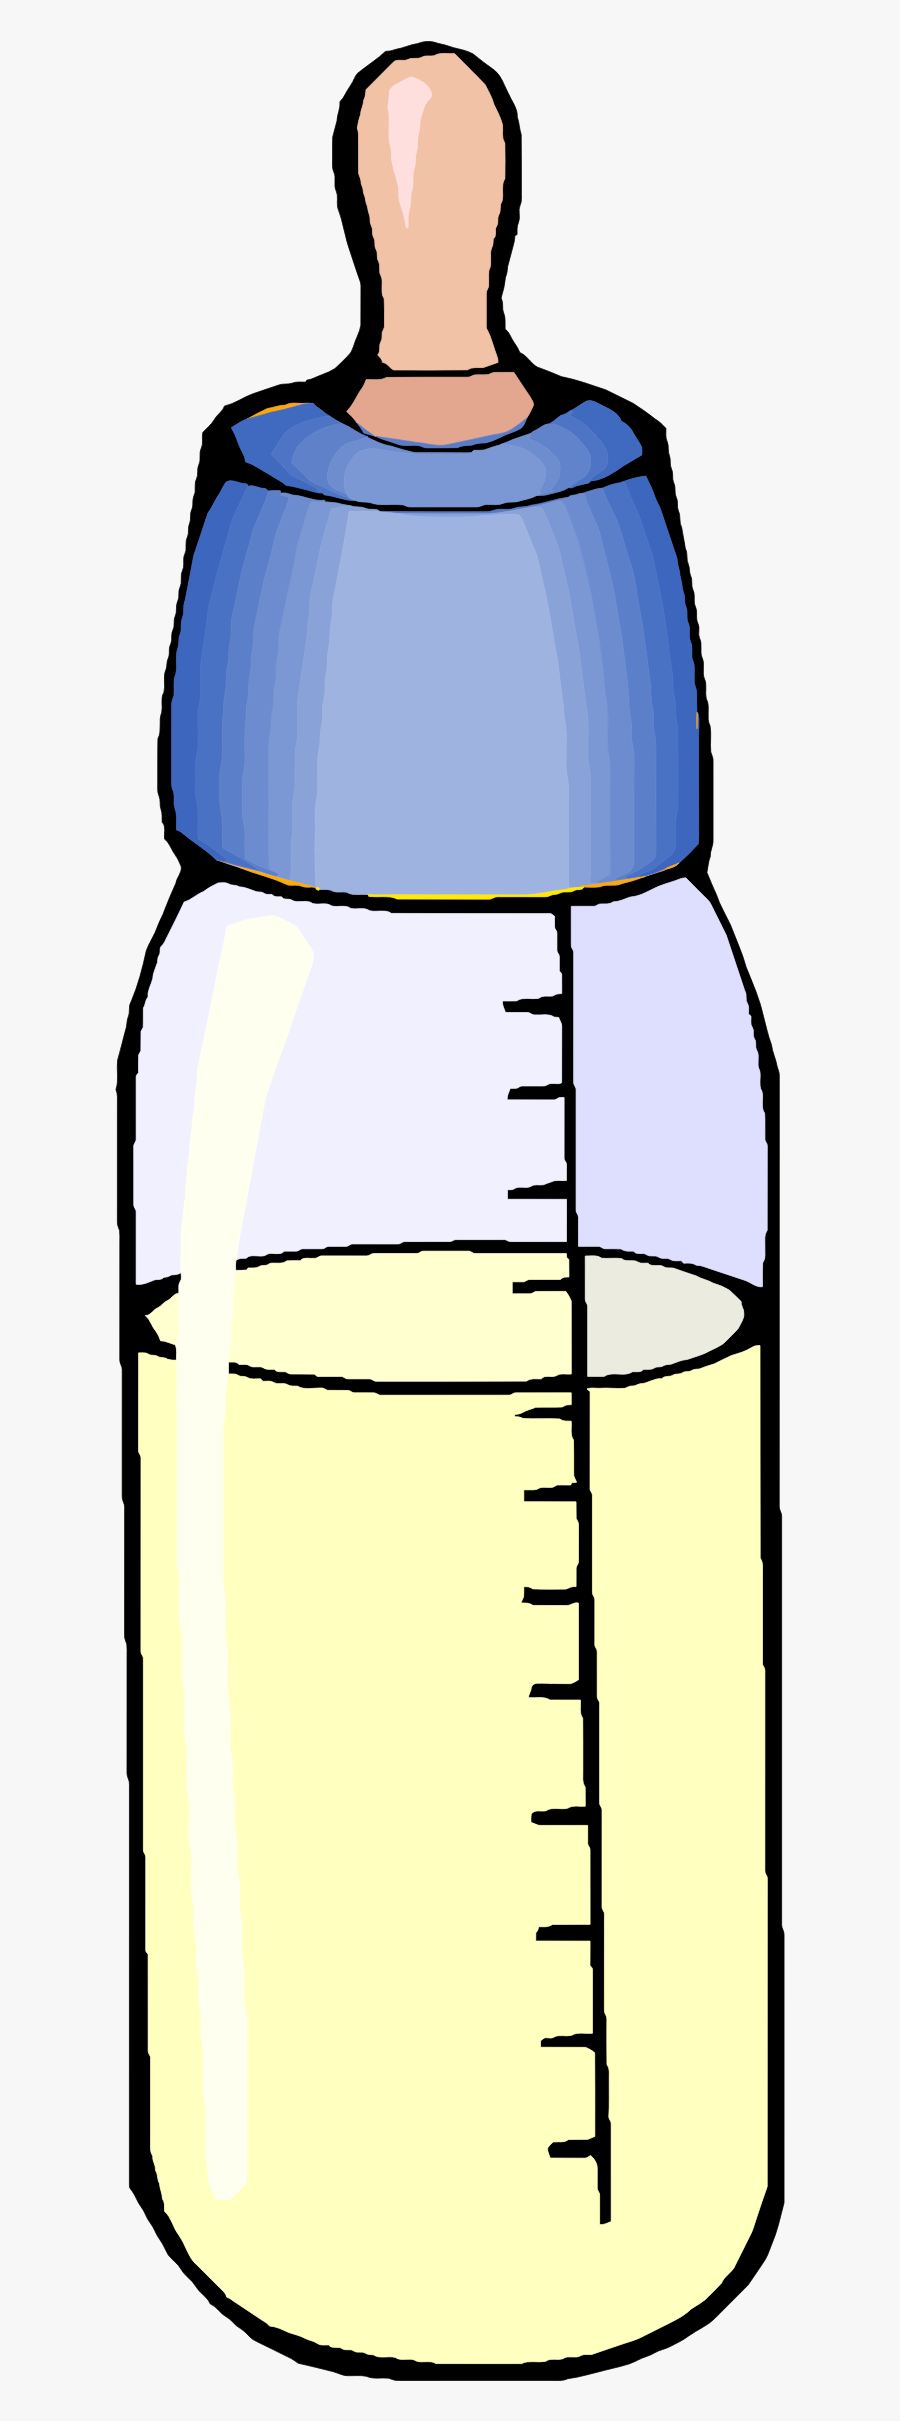 Transparent Milk Bottle Png - Milk Bottle Clip Art, Transparent Clipart